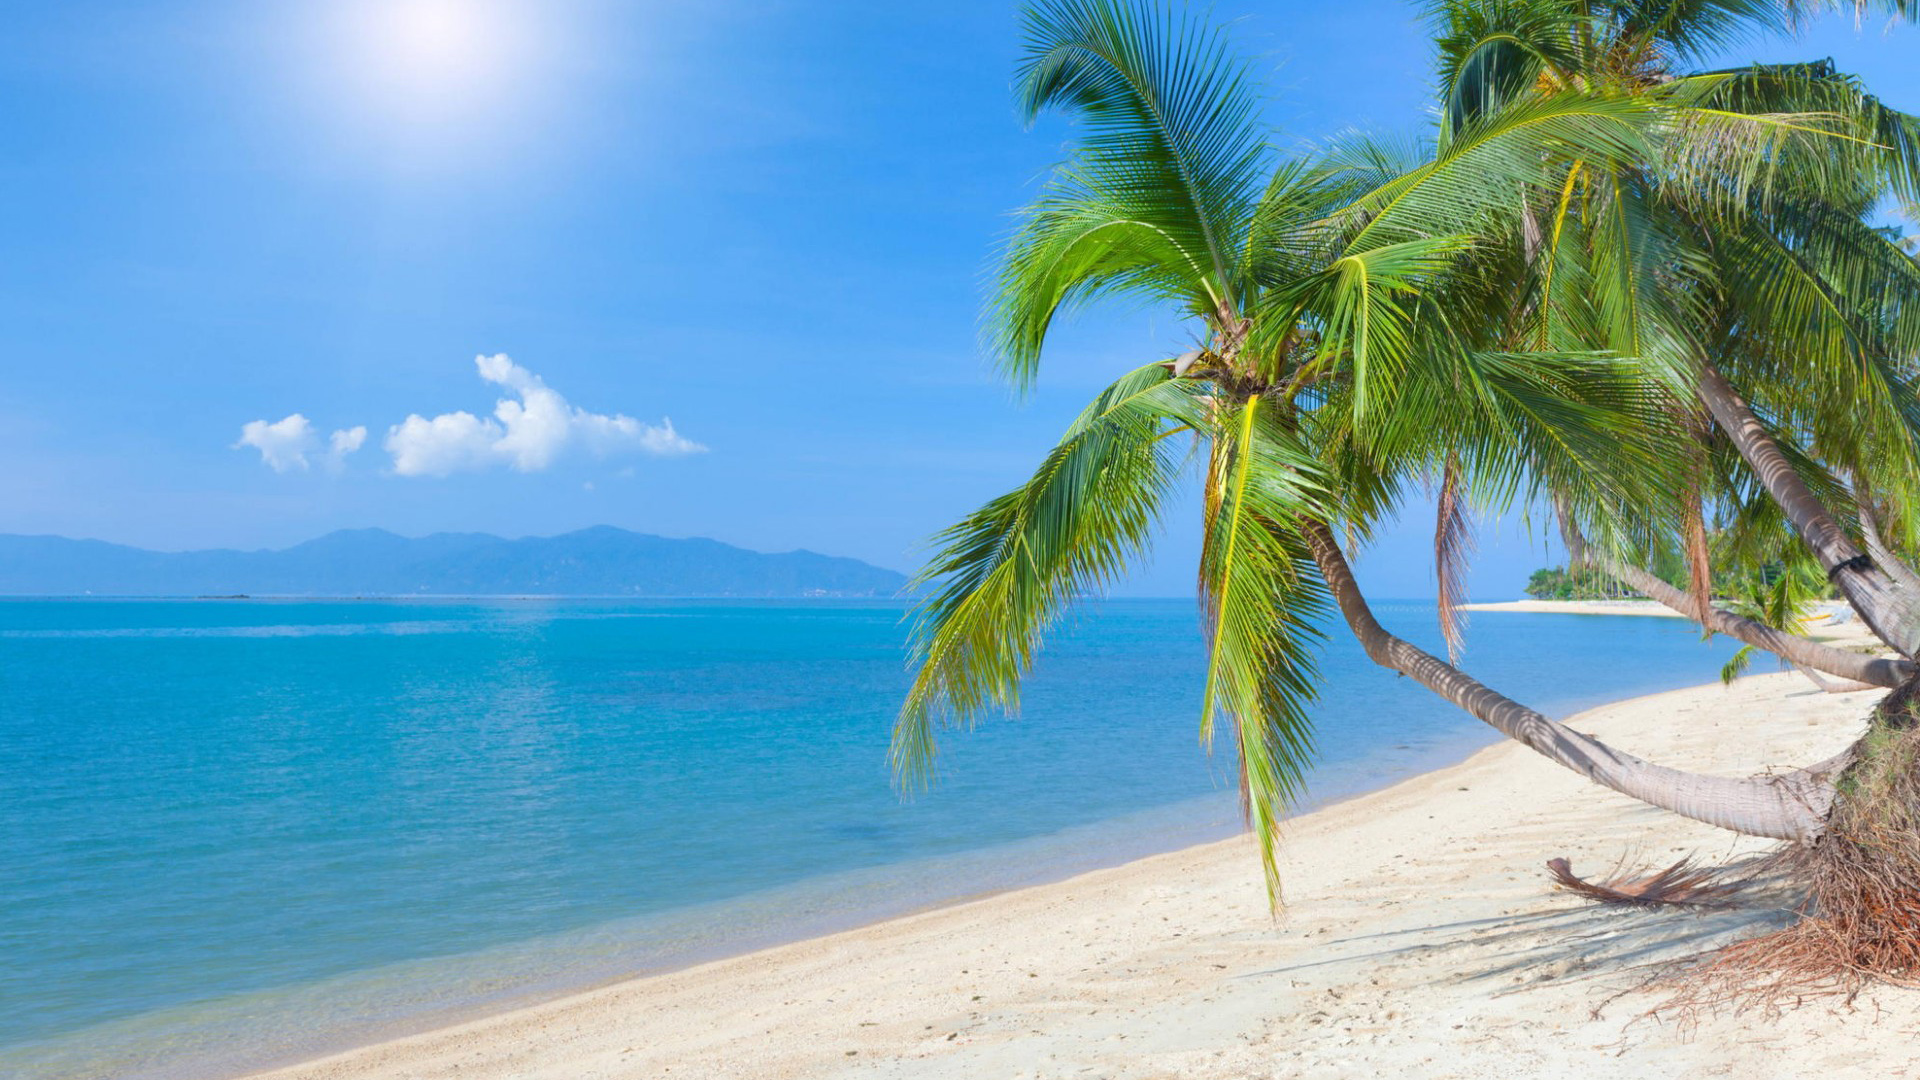 海洋,棕榈树,沙滩,沙子,蓝天,白云,美丽的大海风景桌面壁纸